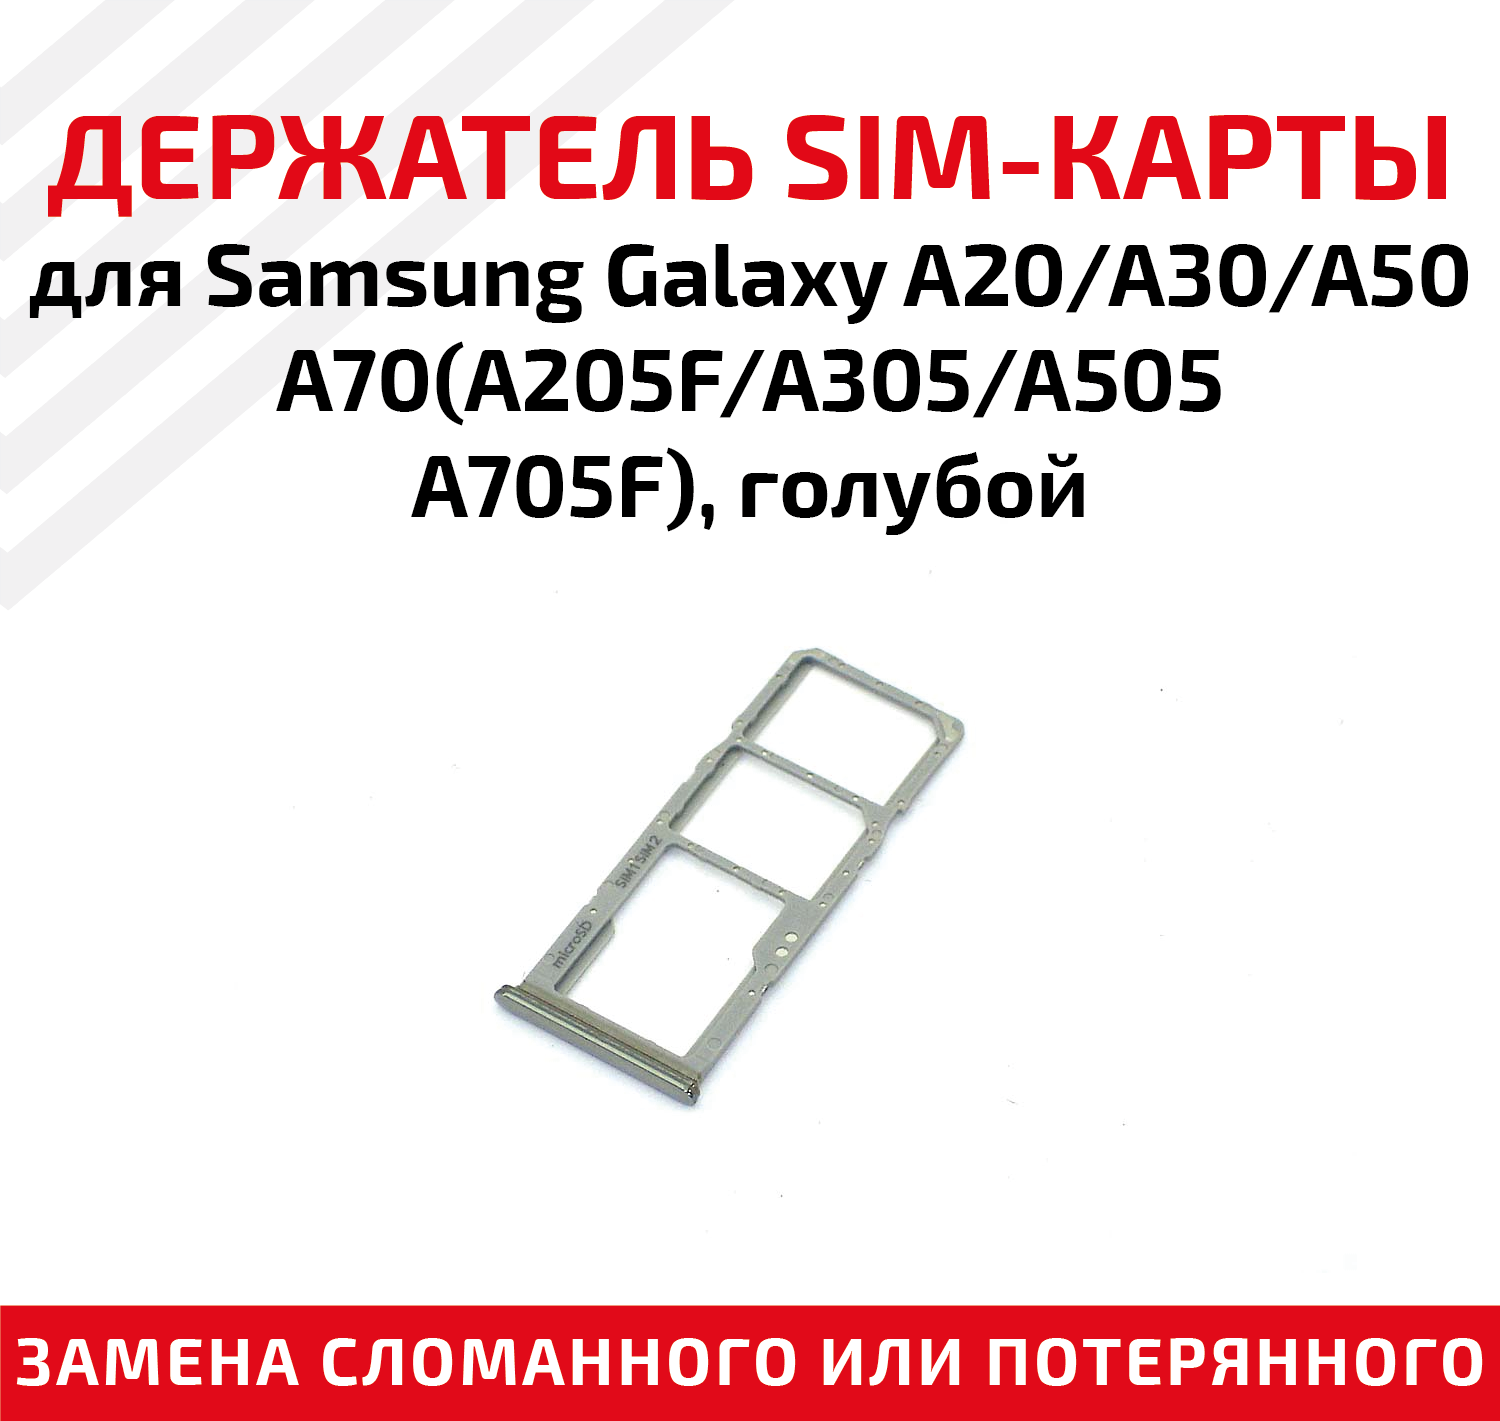 Лоток (держатель контейнер слот) SIM-карты для телефона (смартфона) Samsung Galaxy A20 (A205F) A30 (A305F) A50 (A505F) A70 (A705F) голубой